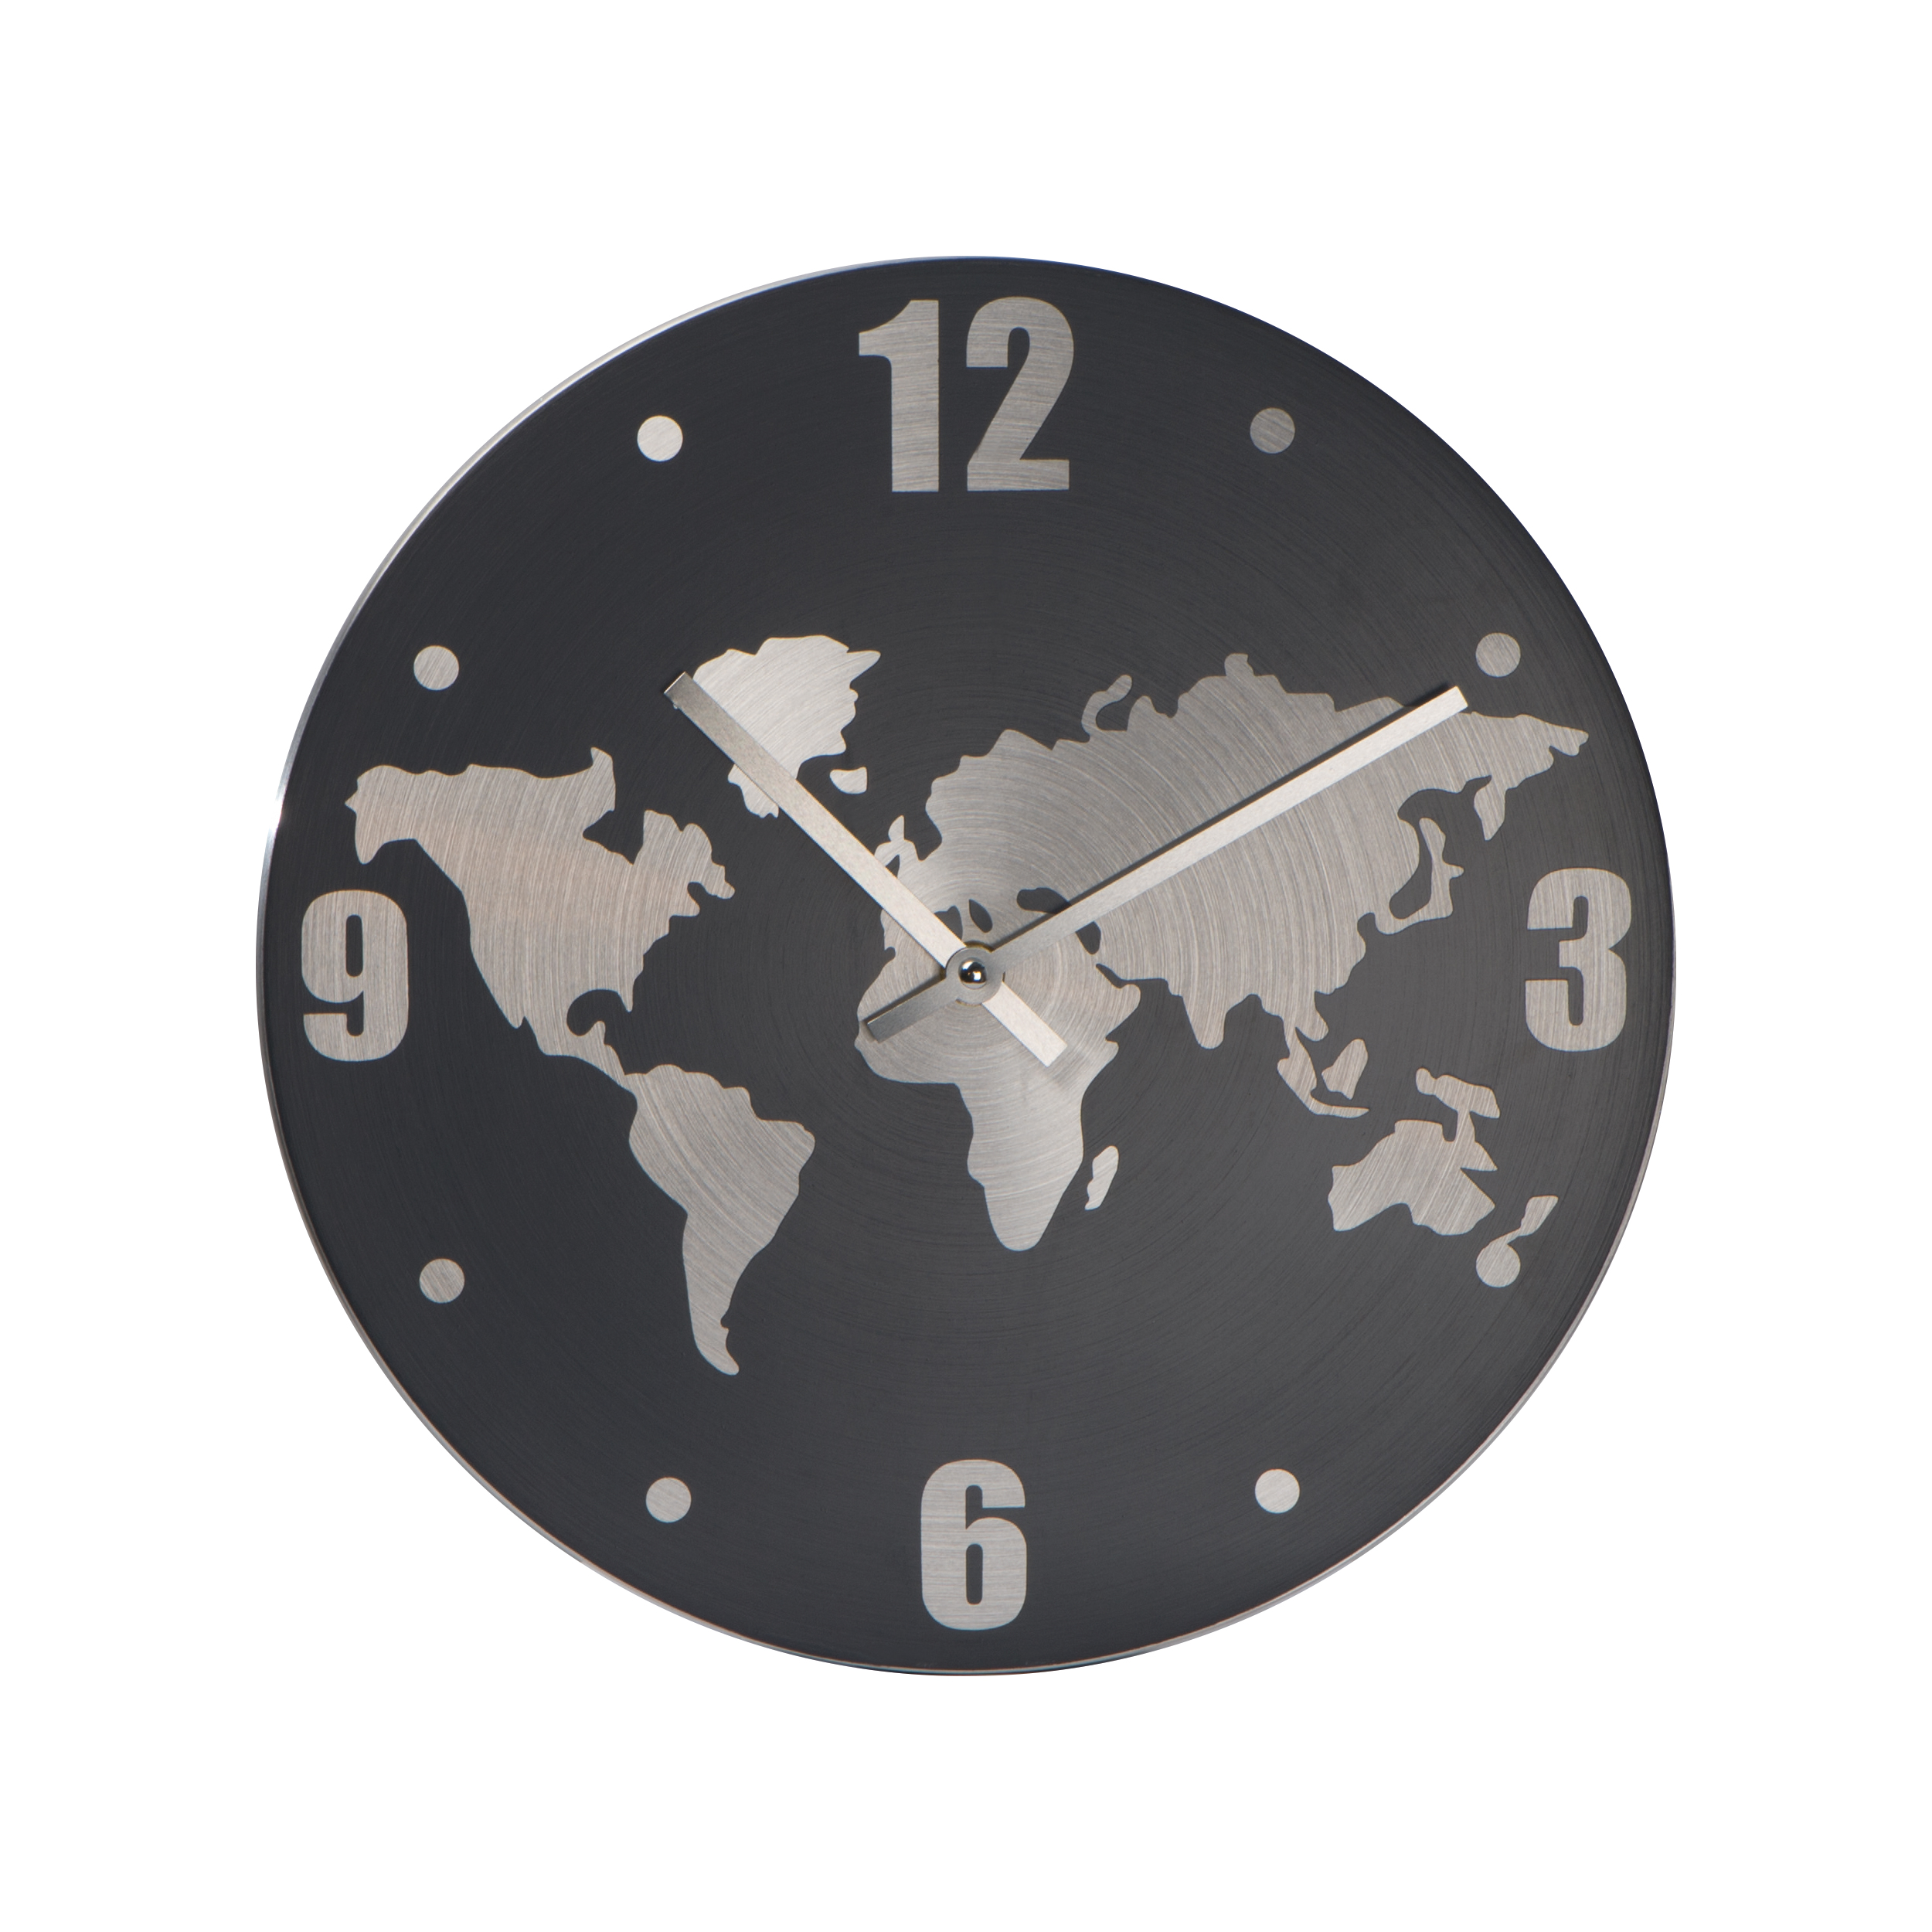 Reloj de Pared de Aluminio con Mapa del Mundo - Bempton - Las Ventas con Peña Aguilera